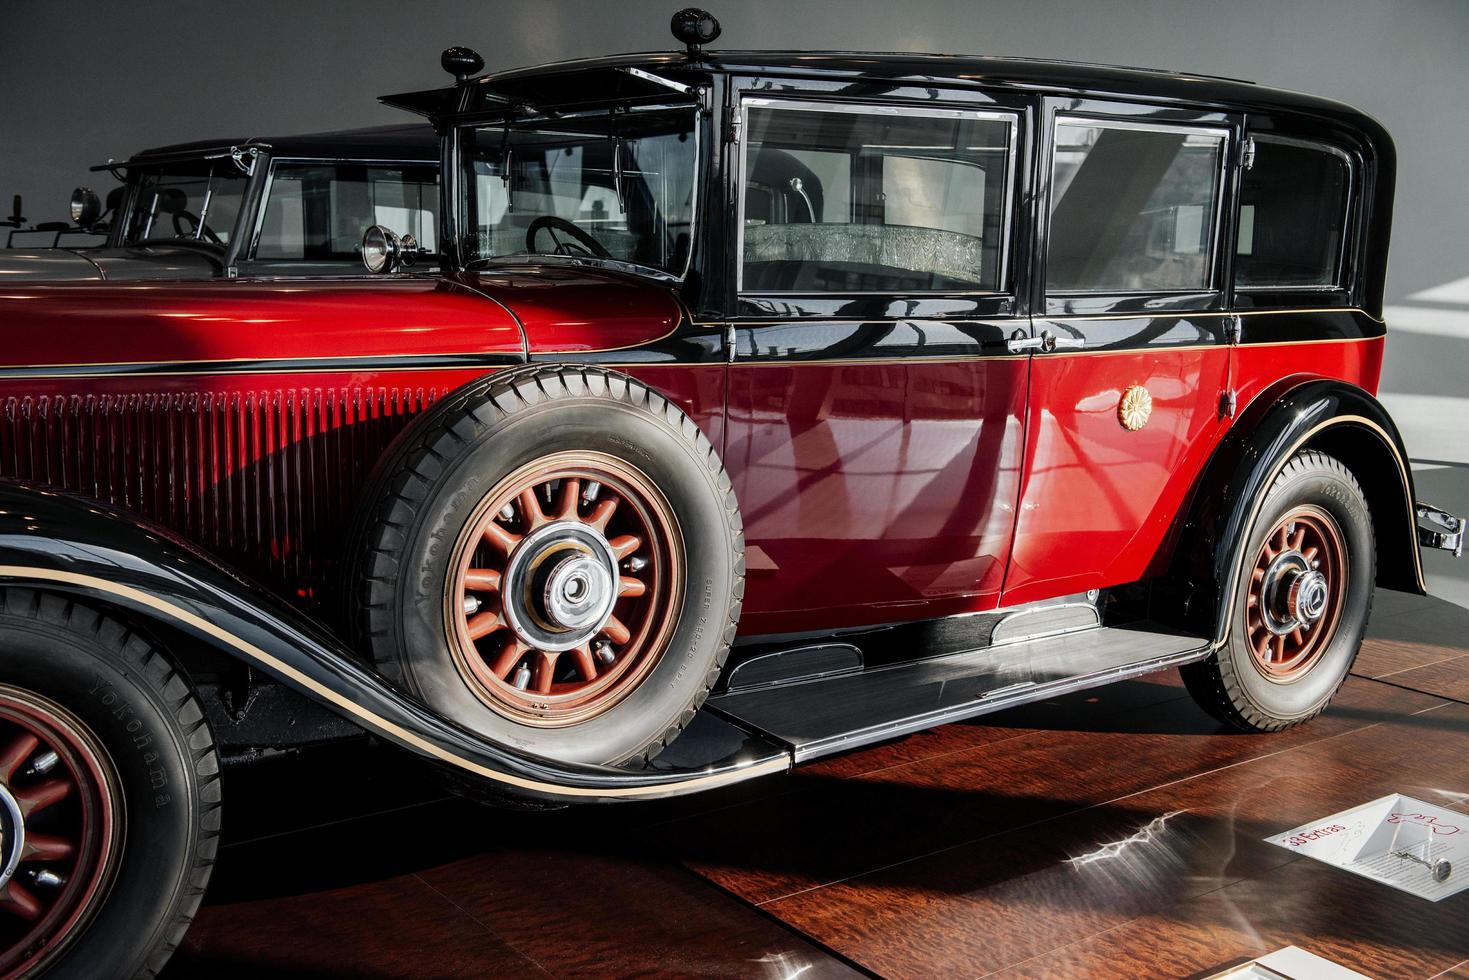 stuttgart, Tyskland - 16 oktober 2018 mercedes museum. två bilar. klassiska röda gamla fordon. sidovy. reservhjul på sidan foto